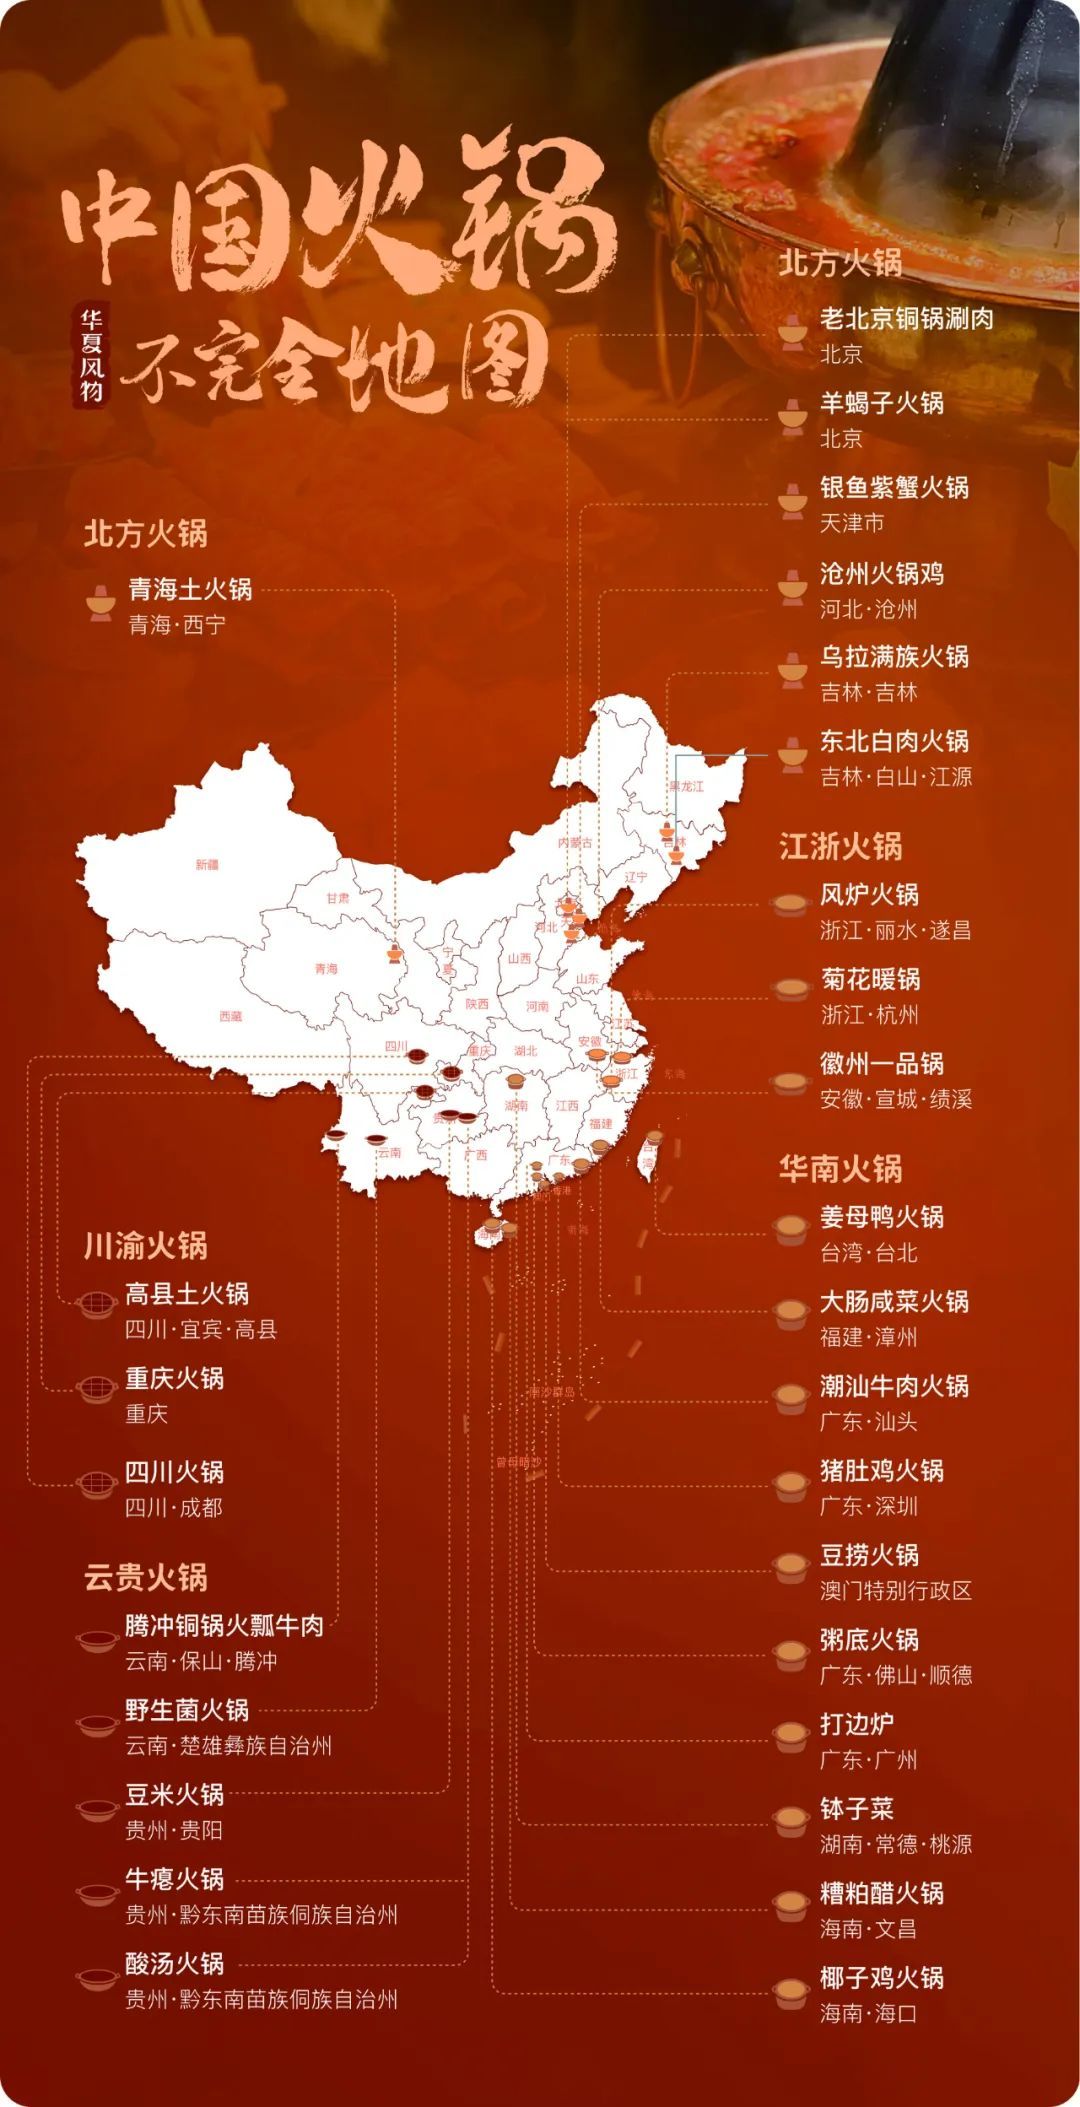 中国火锅不完全地图 ©华夏风物